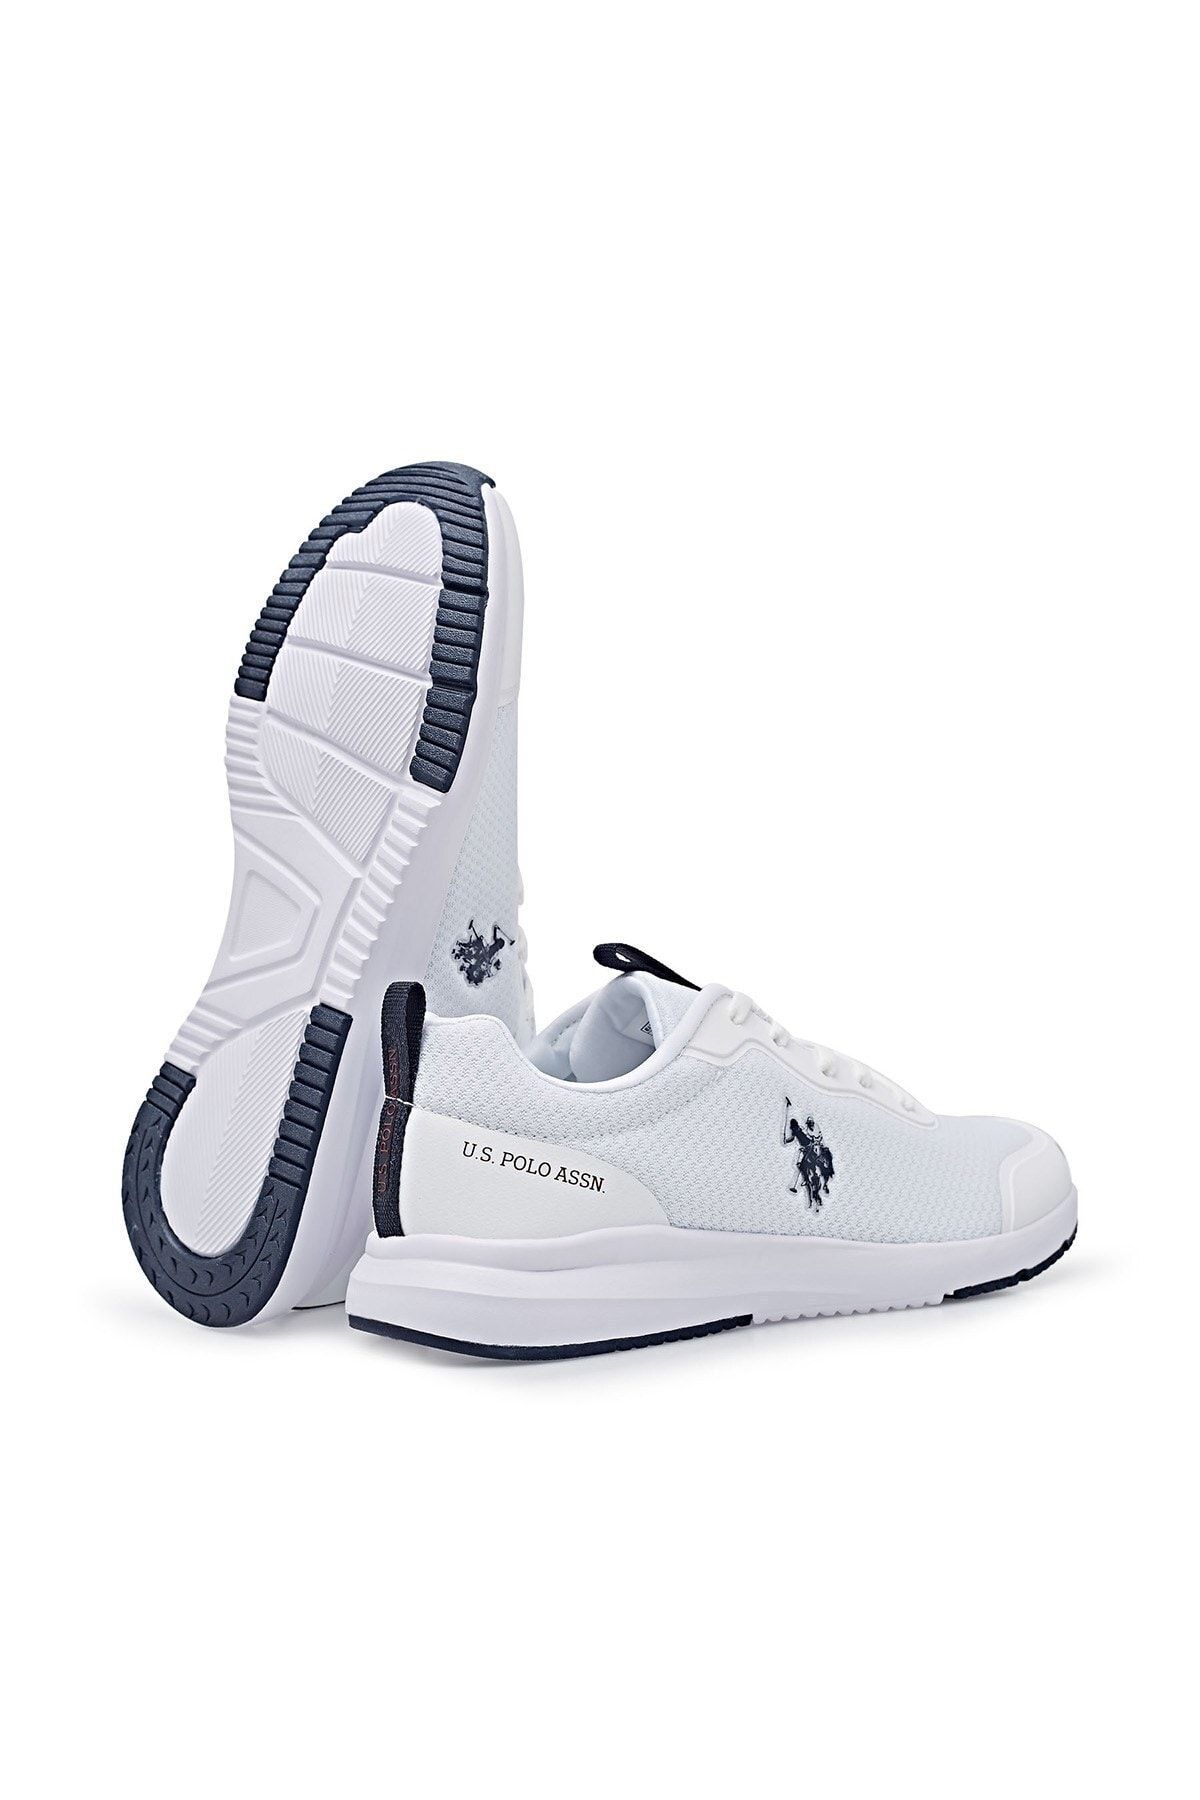 U.S. Polo Assn. Smart 3fx Beyaz Kadın Koşu Ayakkabısı